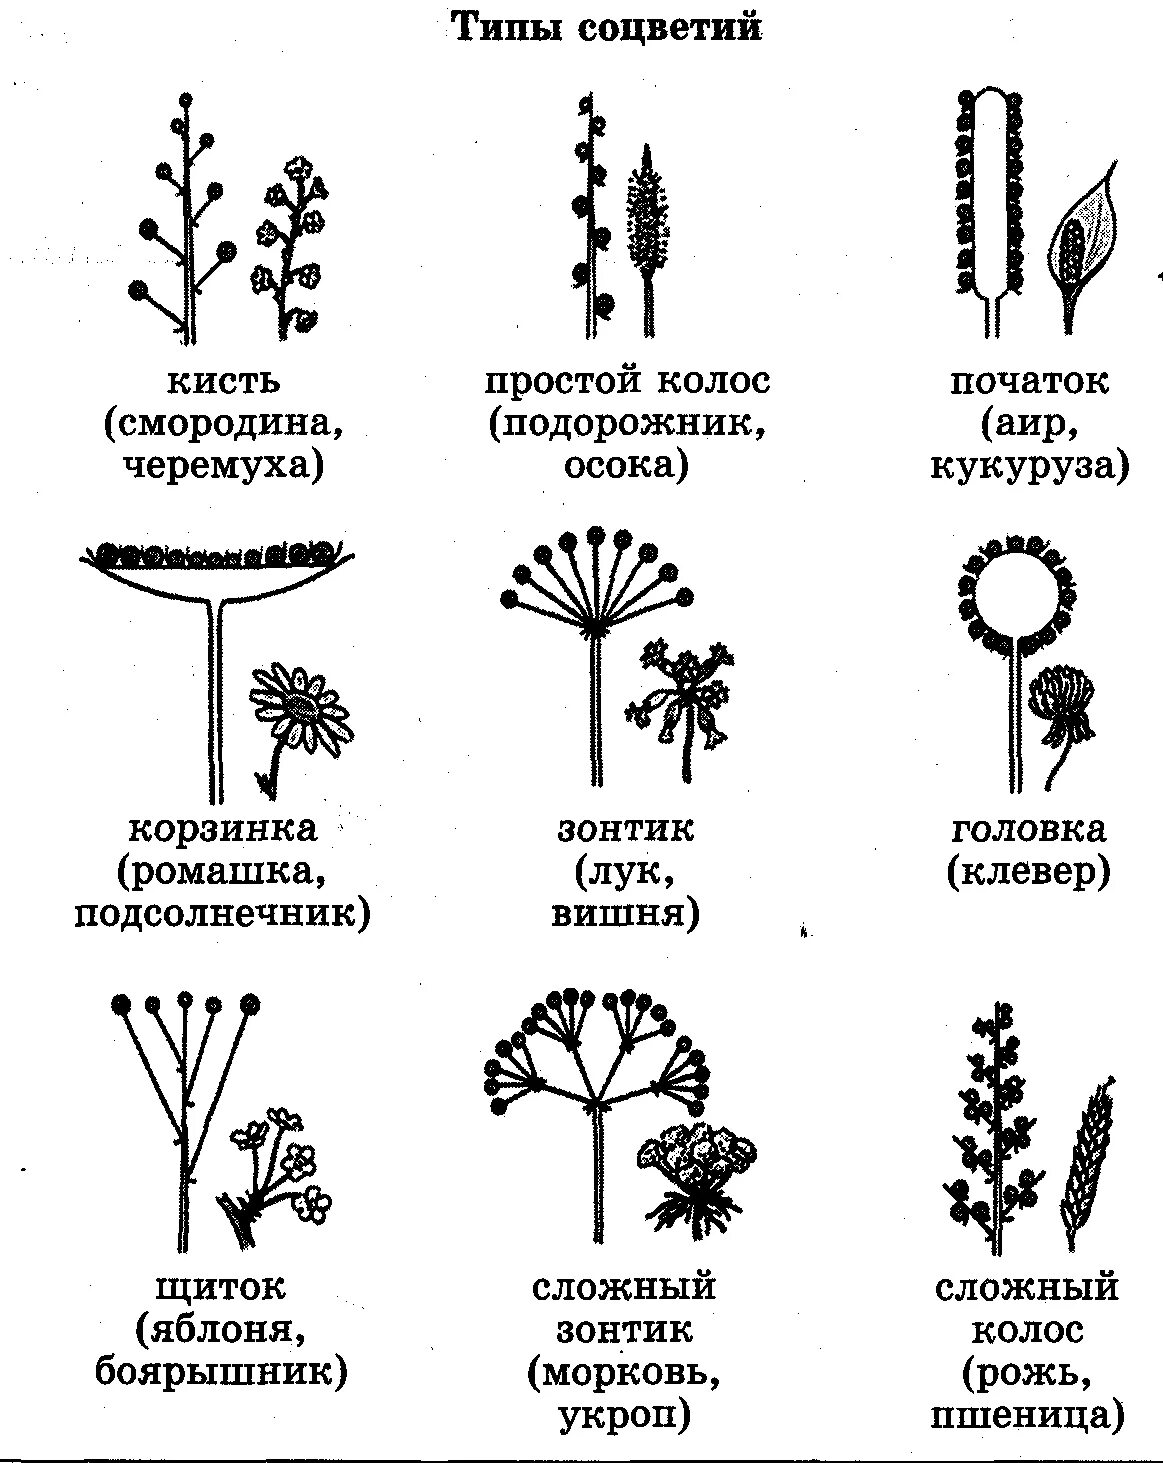 Какой тип соцветия. Схема классификации соцветий цветковых растений. Схемы типов соцветий покрытосеменных растений. Соцветие кистевидная корзинка. Схема сложного соцветия.